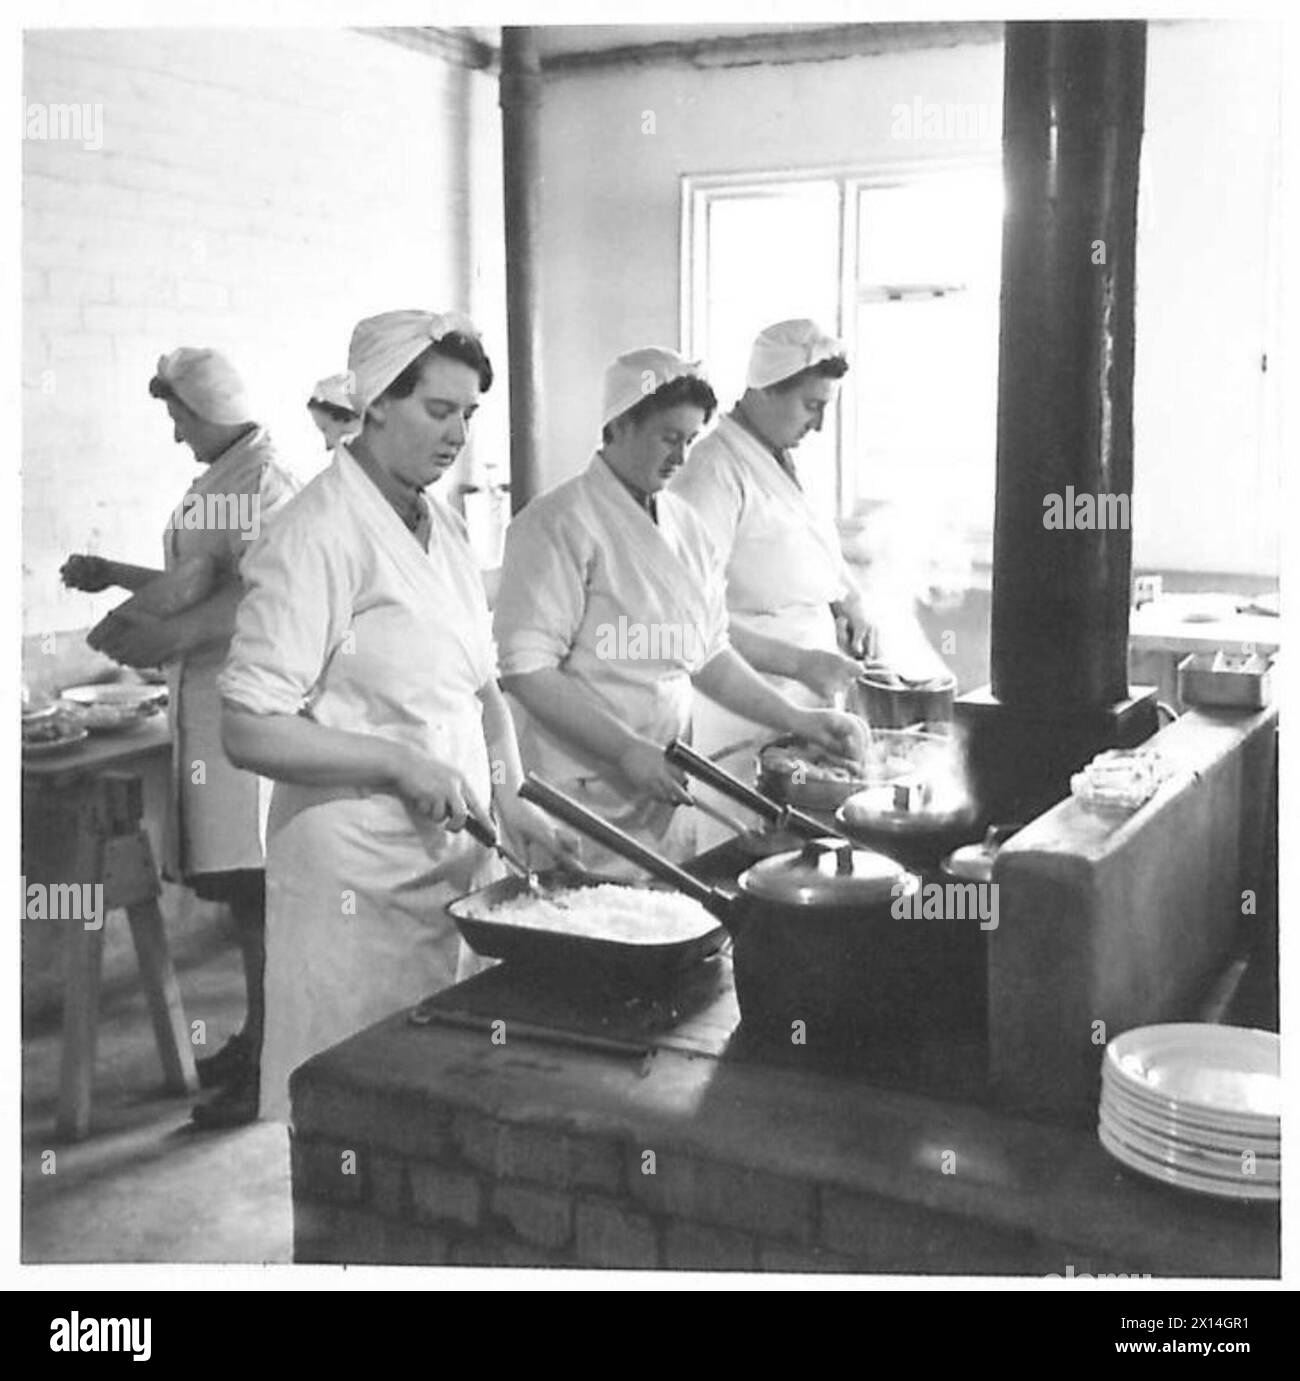 ATS SCHOOL OF COOKING - Hilfskräfte im Bereich, die Mahlzeiten der British Army vorbereiten Stockfoto